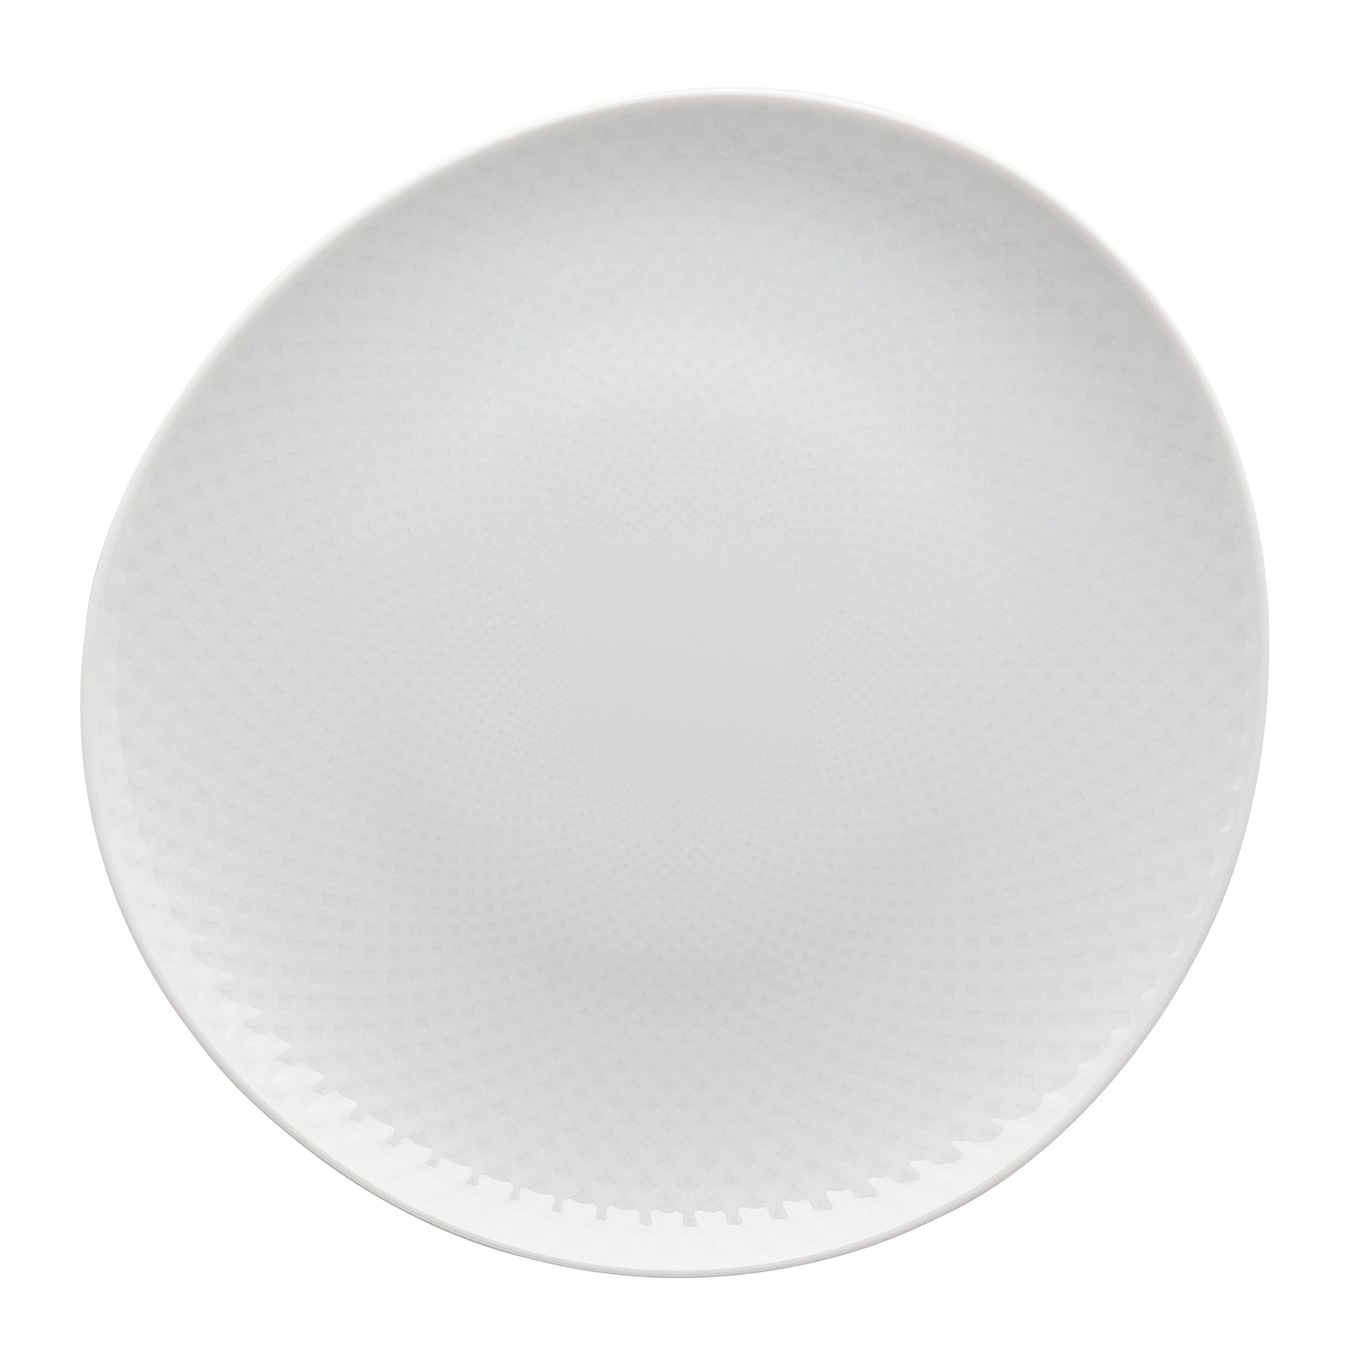 Junto Plate 22 cm, White